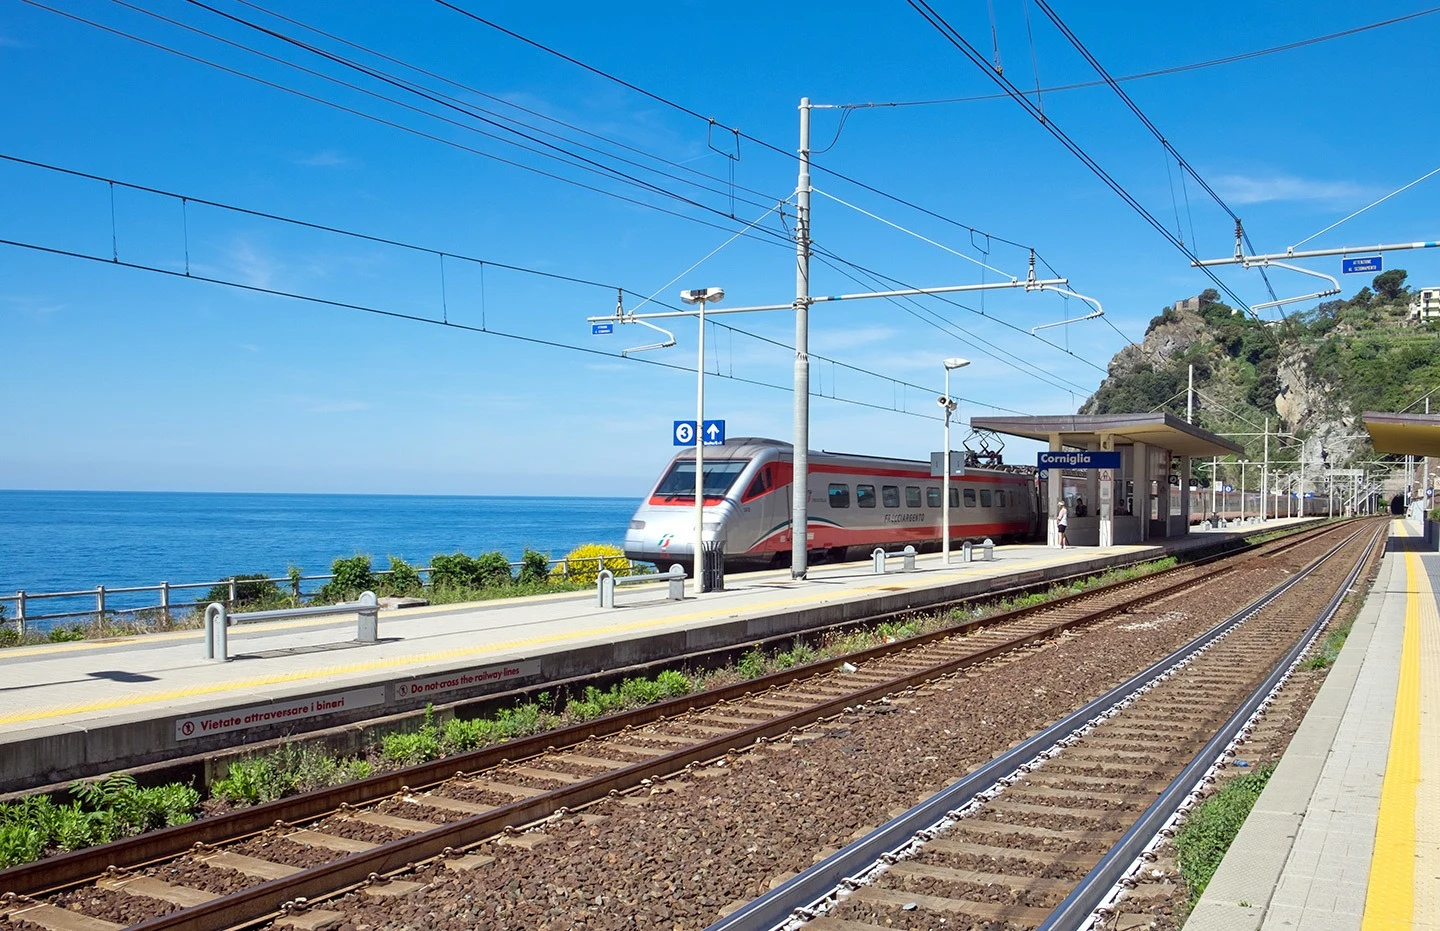 Corniglia train station on the Cinque Terre's coastal train line